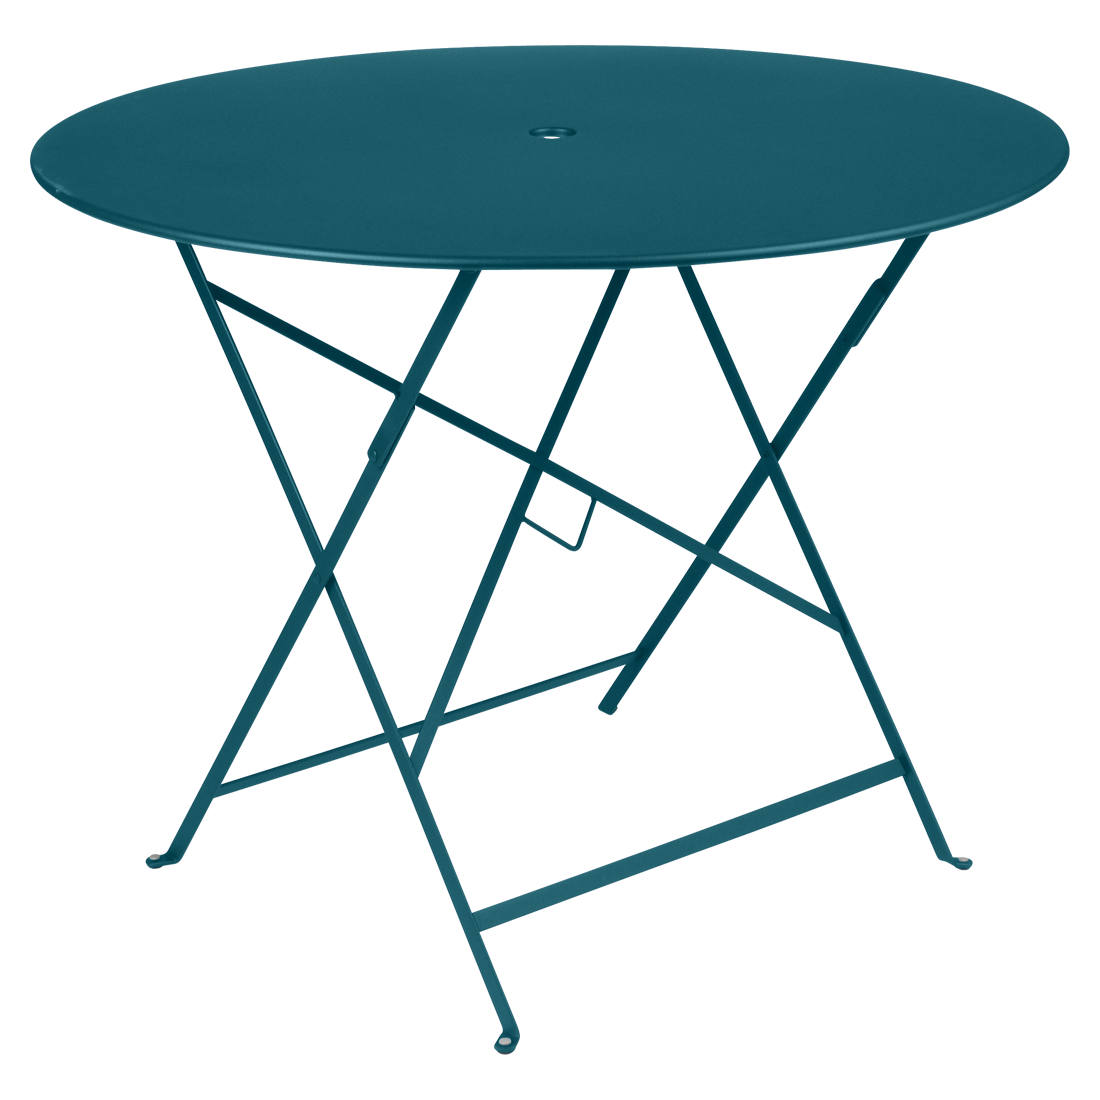 Modrý kovový skládací stůl Fermob Bistro Ø 96 cm Fermob